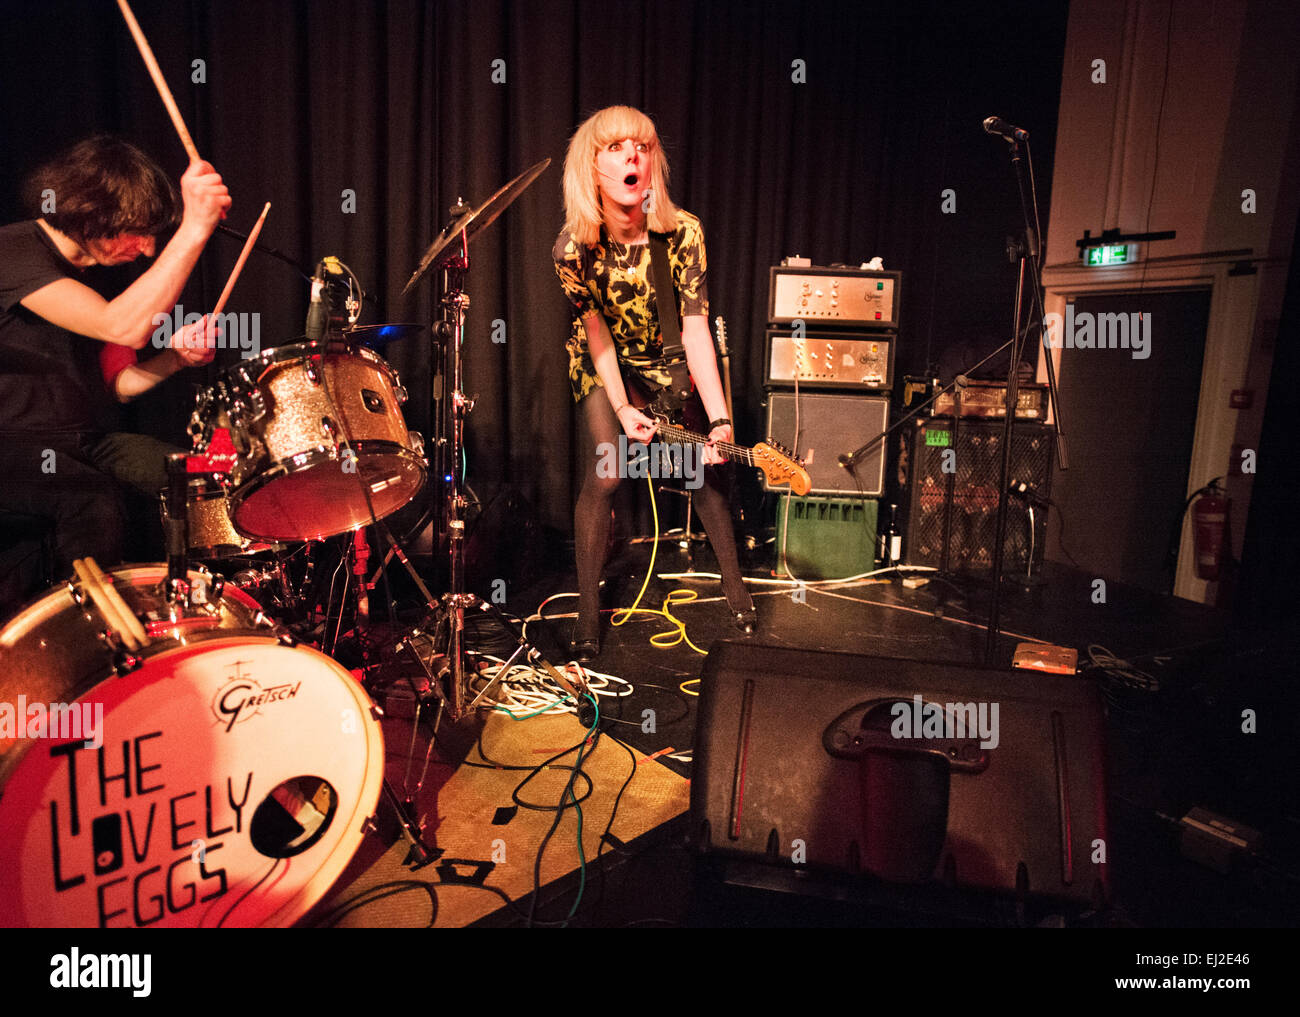 Preston, Lancashire, Reino Unido. El 19 de marzo, 2015. Banda de rock indie La Encantadora huevos en un concierto en el Continental, Preston. Holly Ross y David Blackwell. Foto de stock